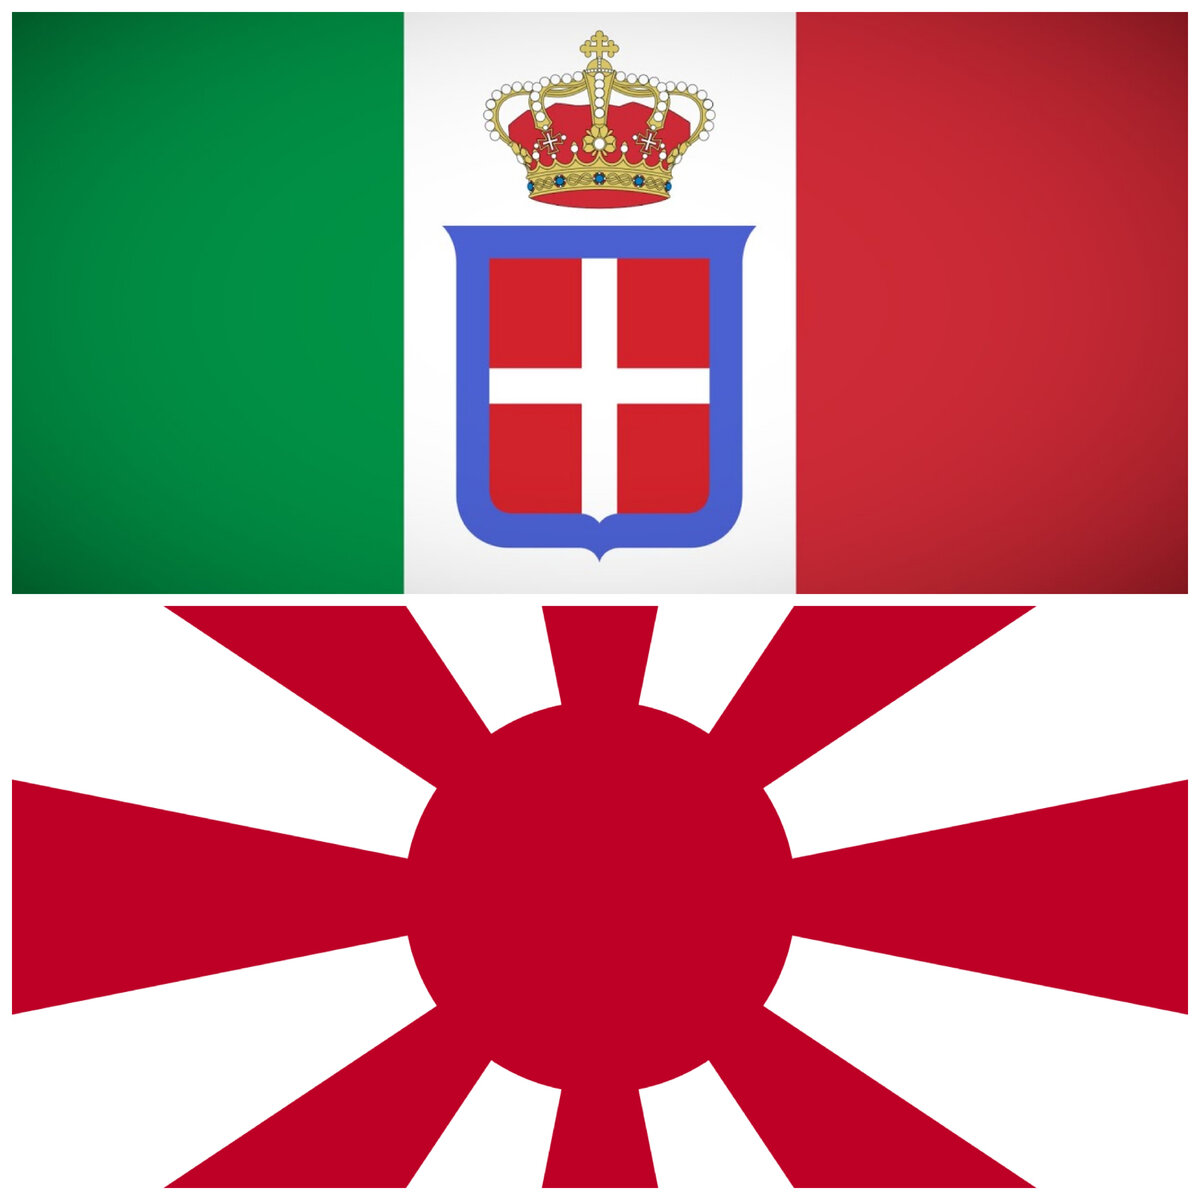 Верхний флаг - фашистской Италии;                                                                                                         Нижний флаг - милитаристской Японии.